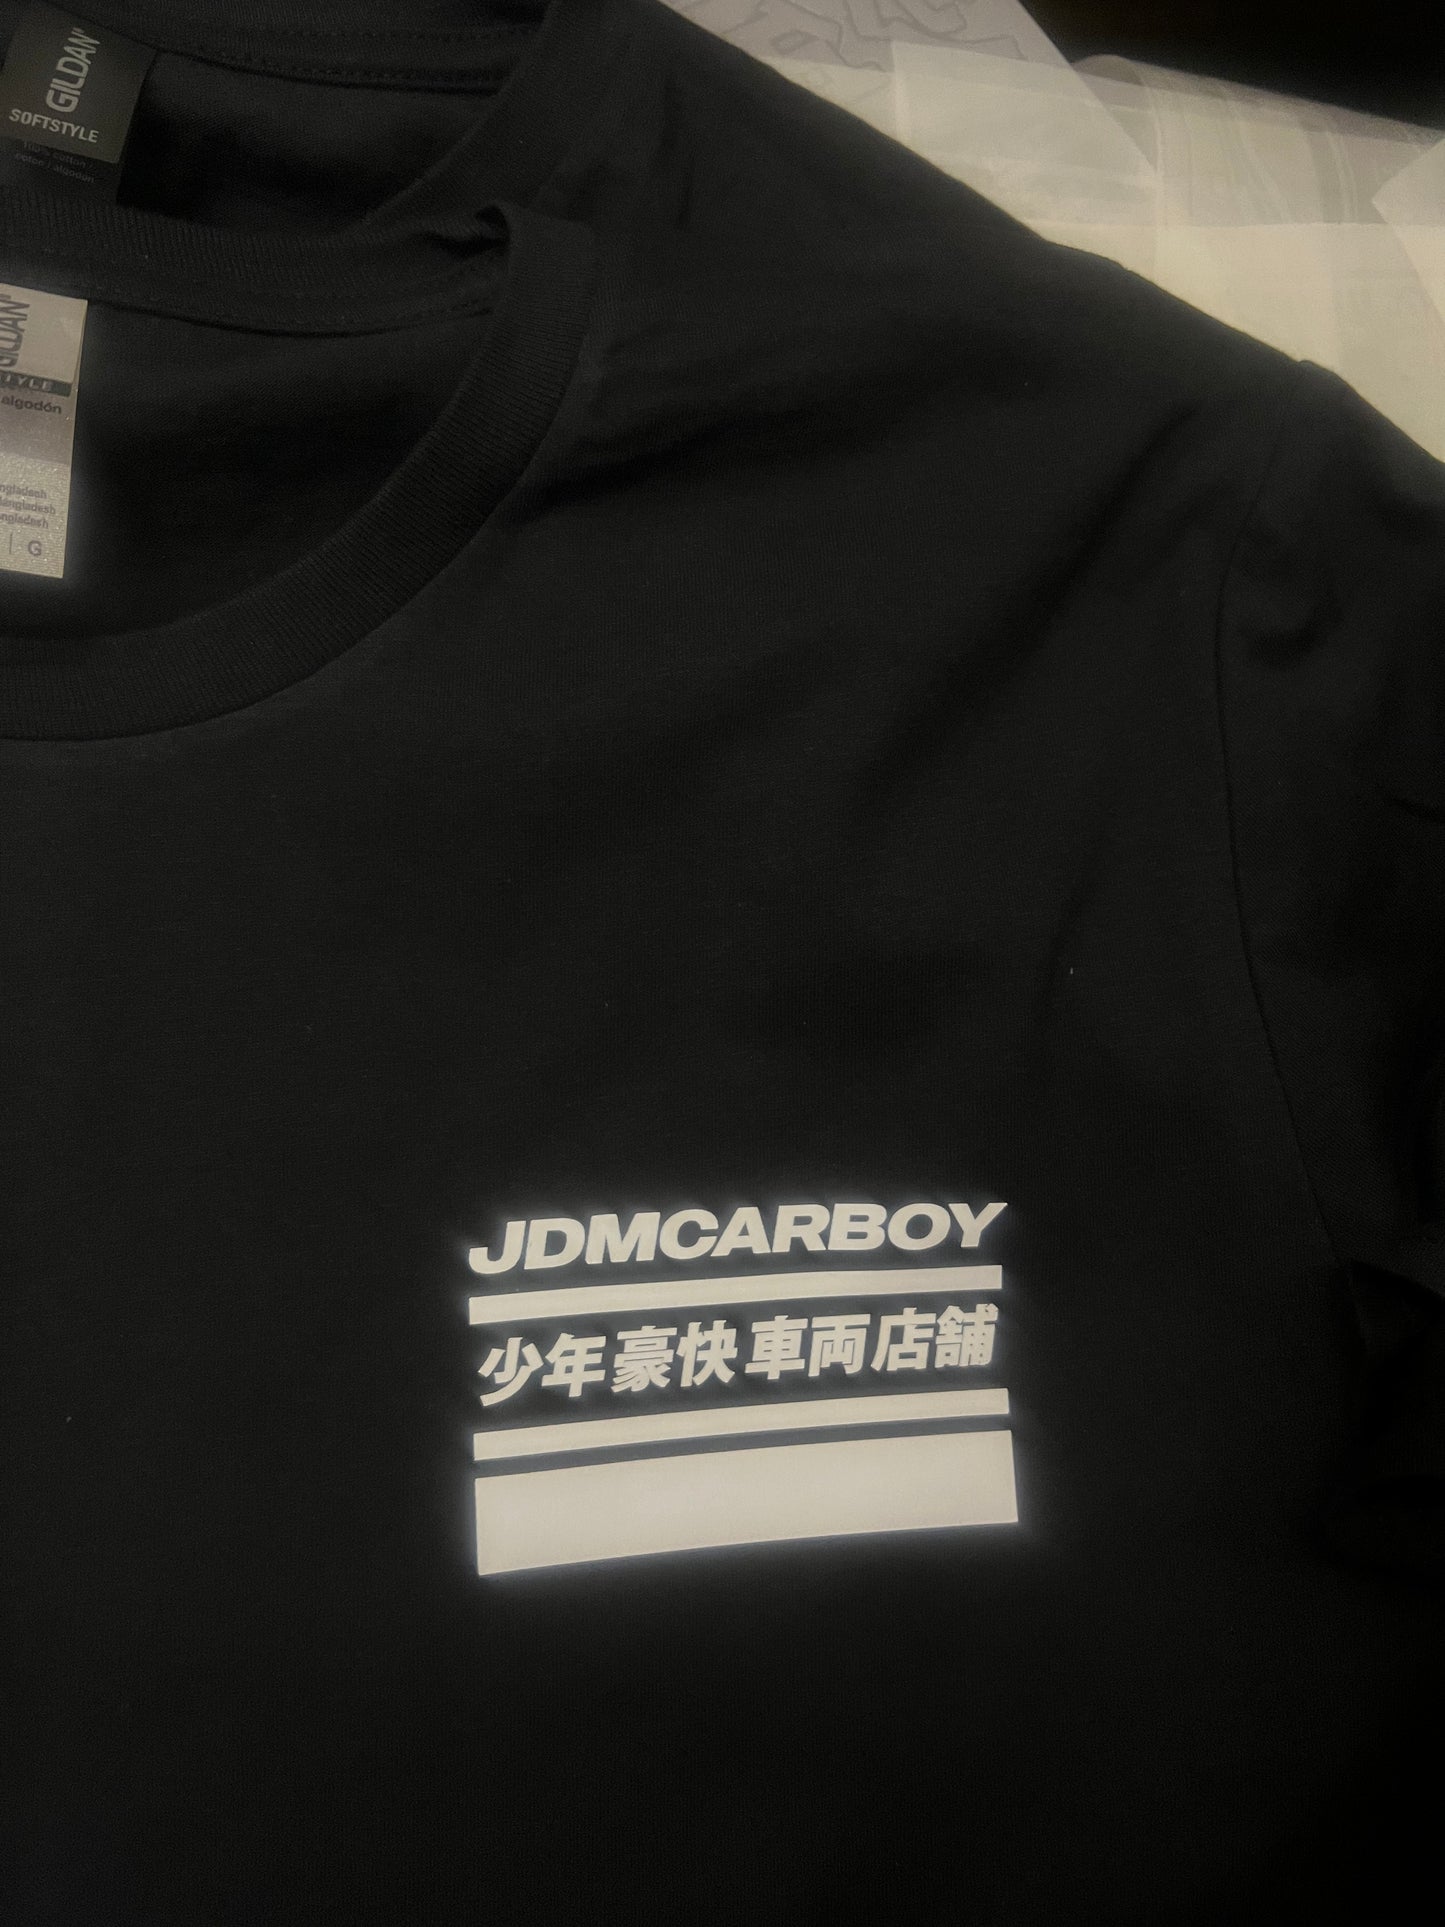 JDMCARBOY x AE86 Trueno T-Shirt